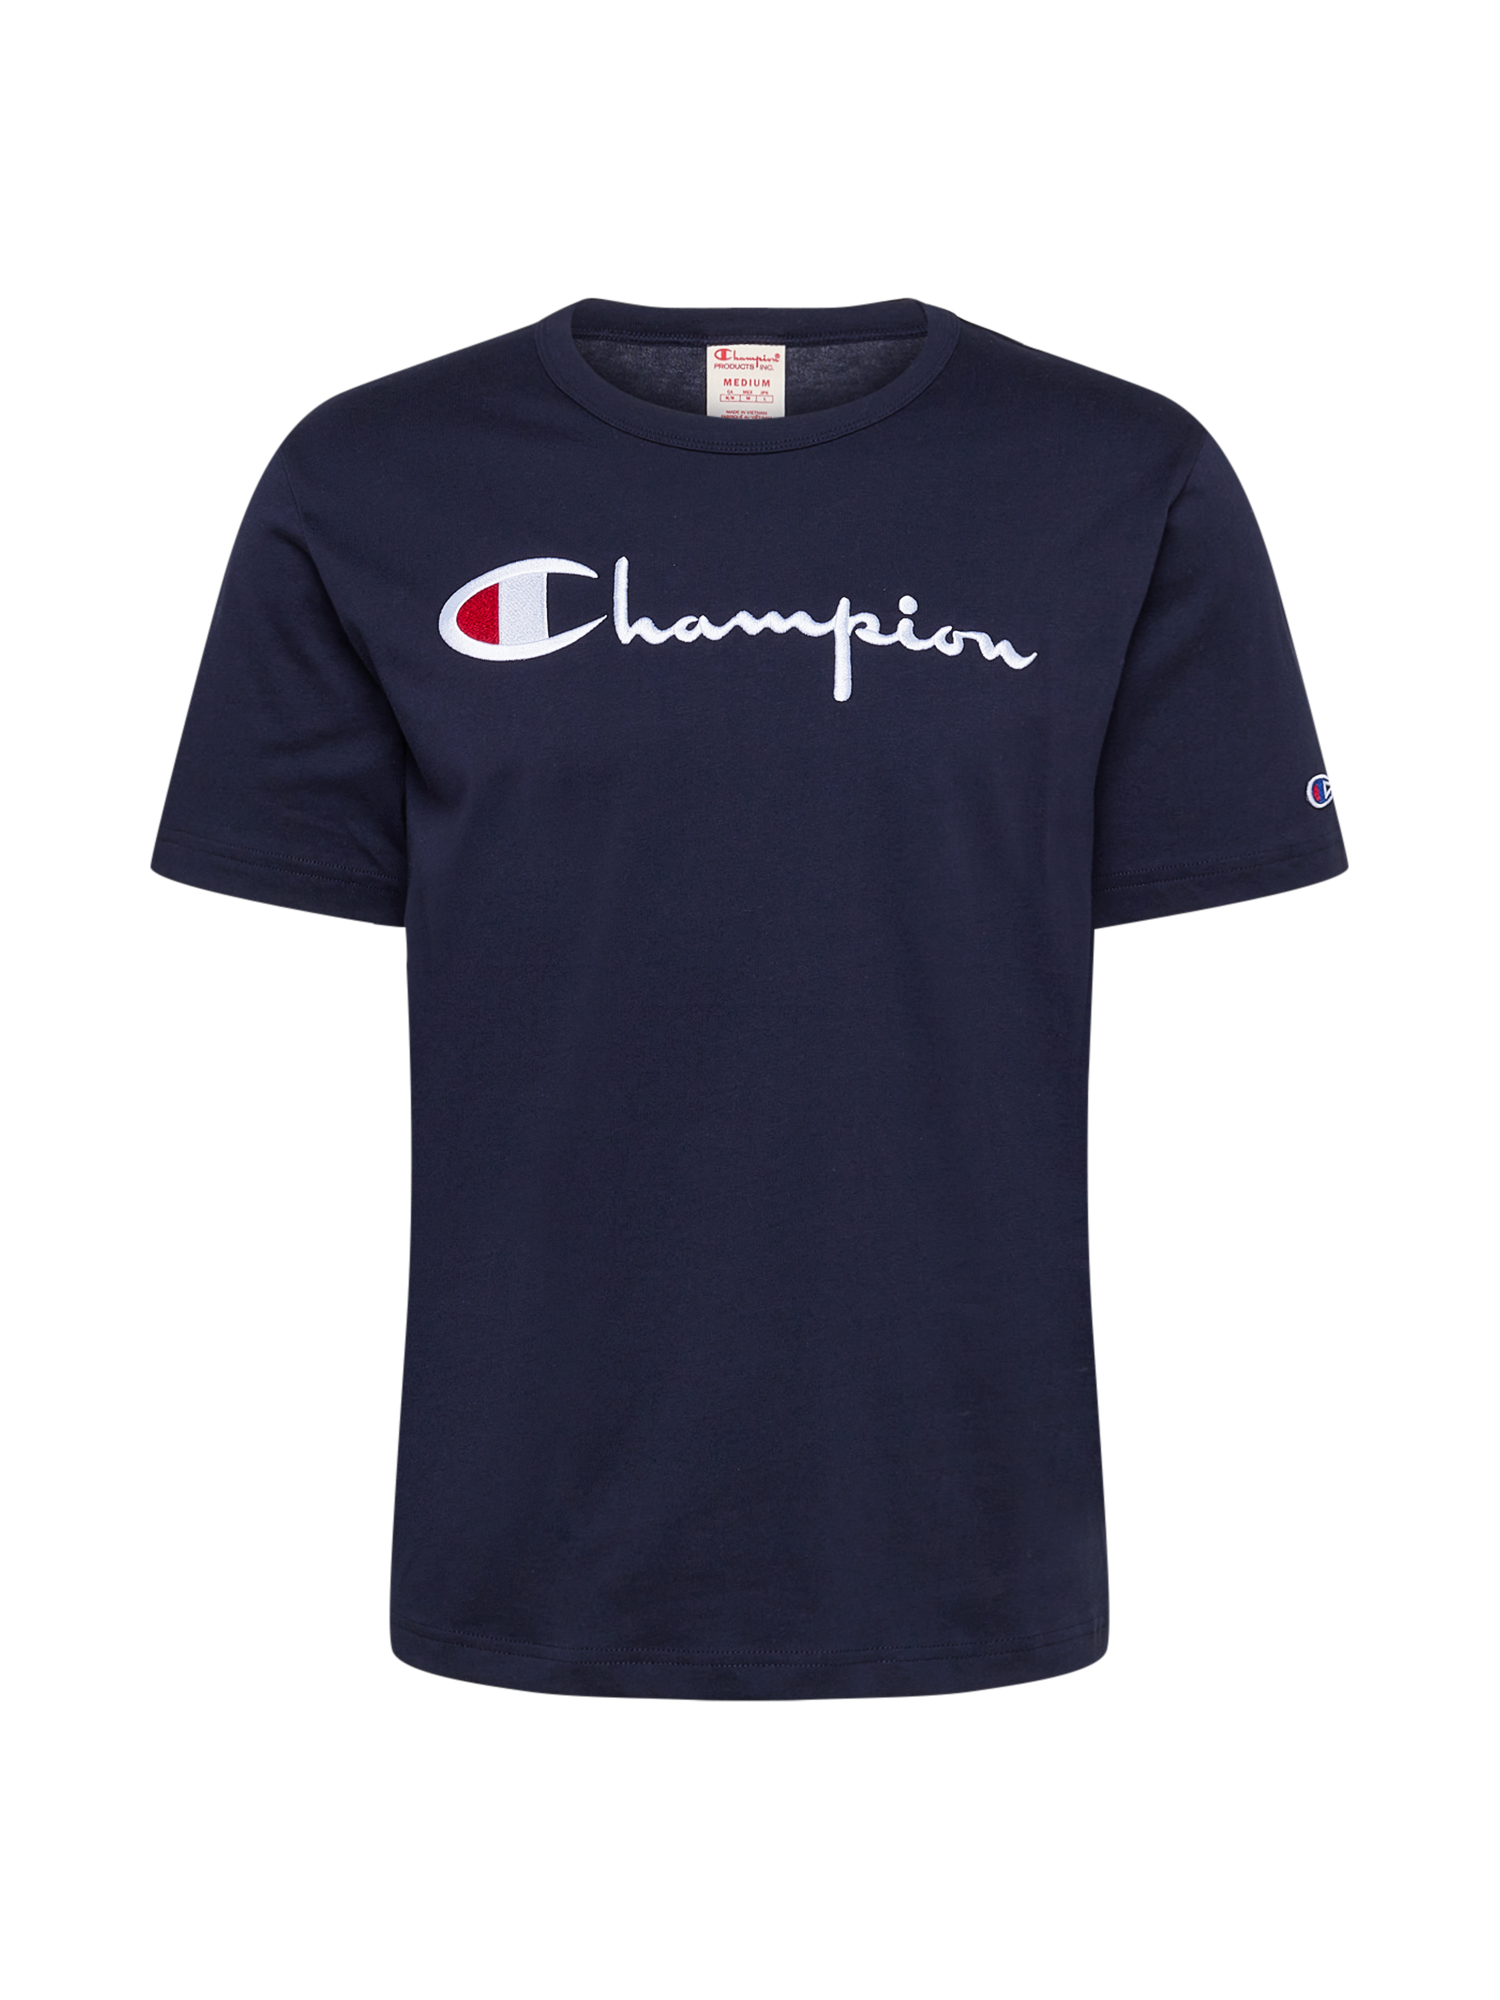 Koszulki Odzież Champion Reverse Weave Koszulka w kolorze Granatowym 